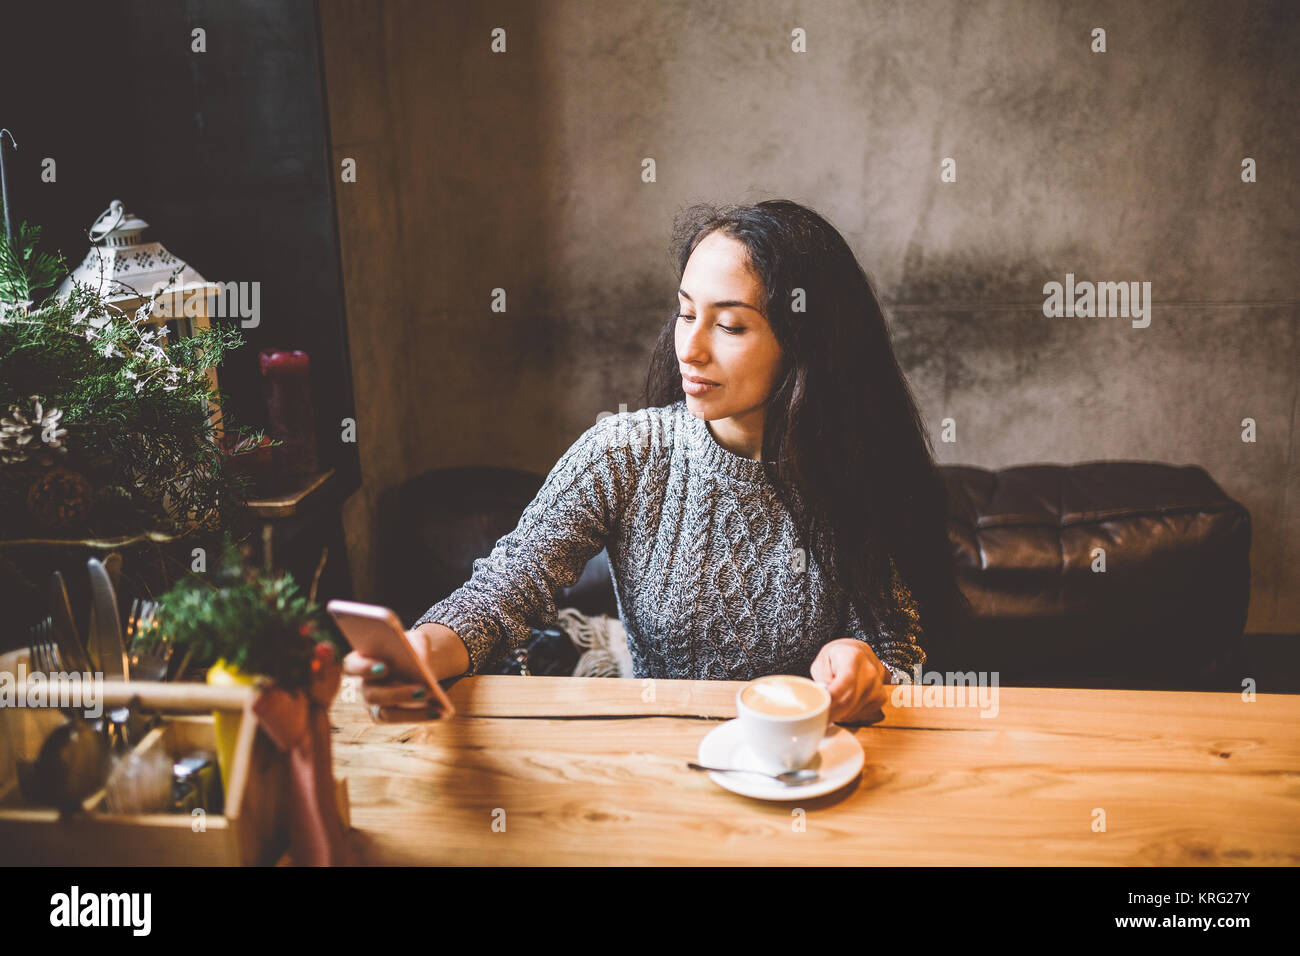 Belle jeune fille utilise, les types de texte sur un téléphone mobile à une table en bois près de la fenêtre et boit du café dans un café décoré avec des décorations de Noël. Vêtu d'un pull en laine tricoté gris Banque D'Images